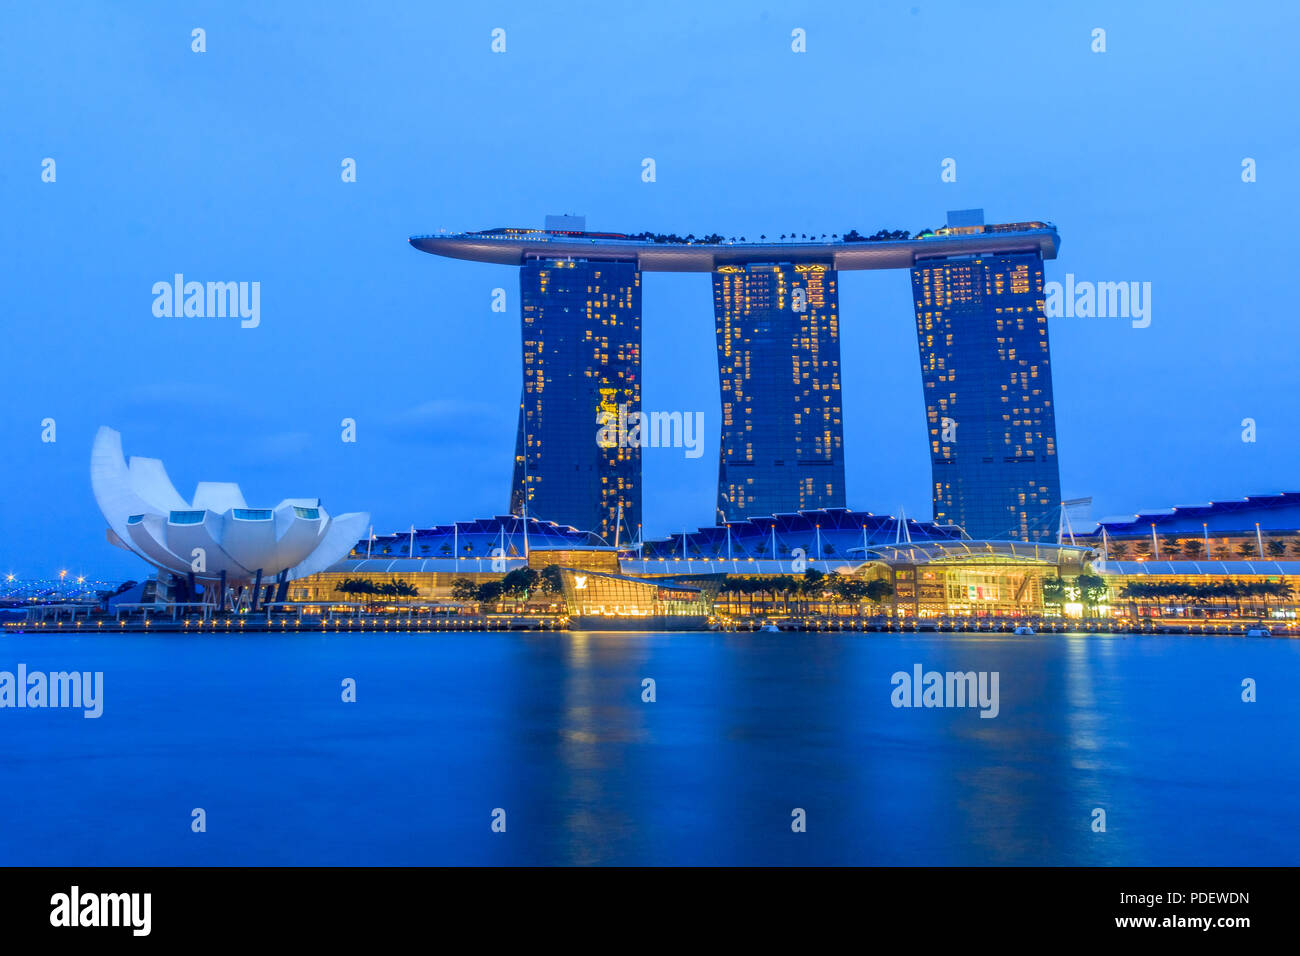 Singapour, Singapour - 20 janvier : Le conseil de l'hôtel en forme de surf luxueuses et Marina Bay Sands casino et lotus-musée ArtScience inspiré après le coucher du soleil Banque D'Images